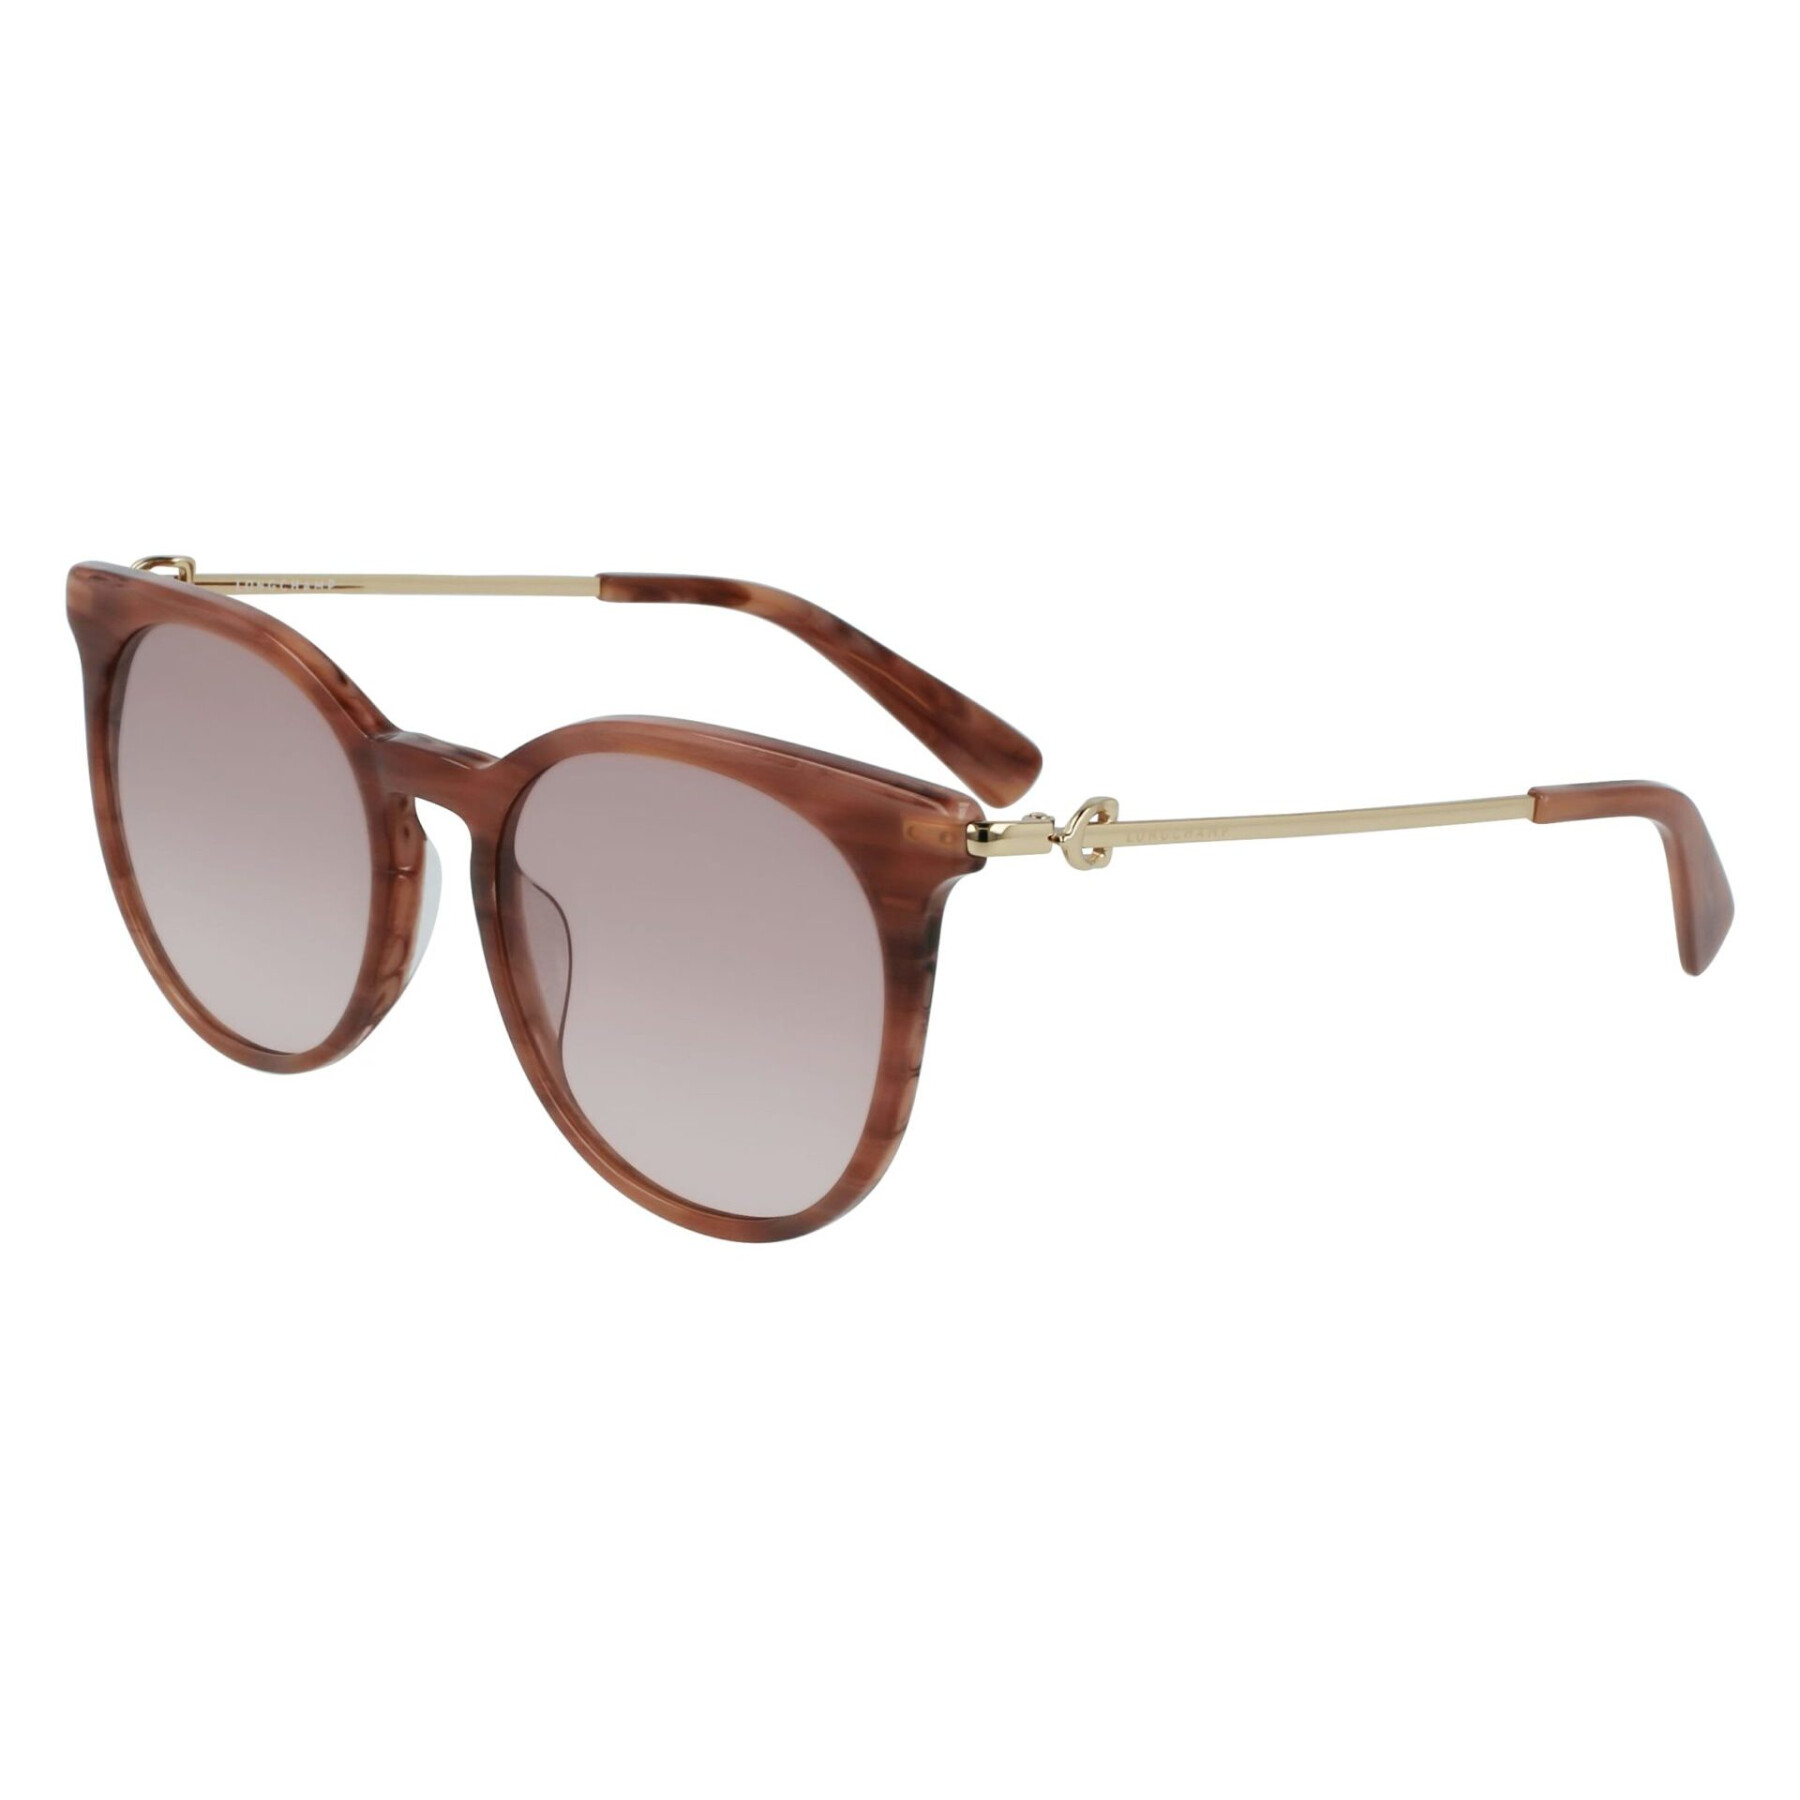 Women's sunglasses Longchamp LO693S-275